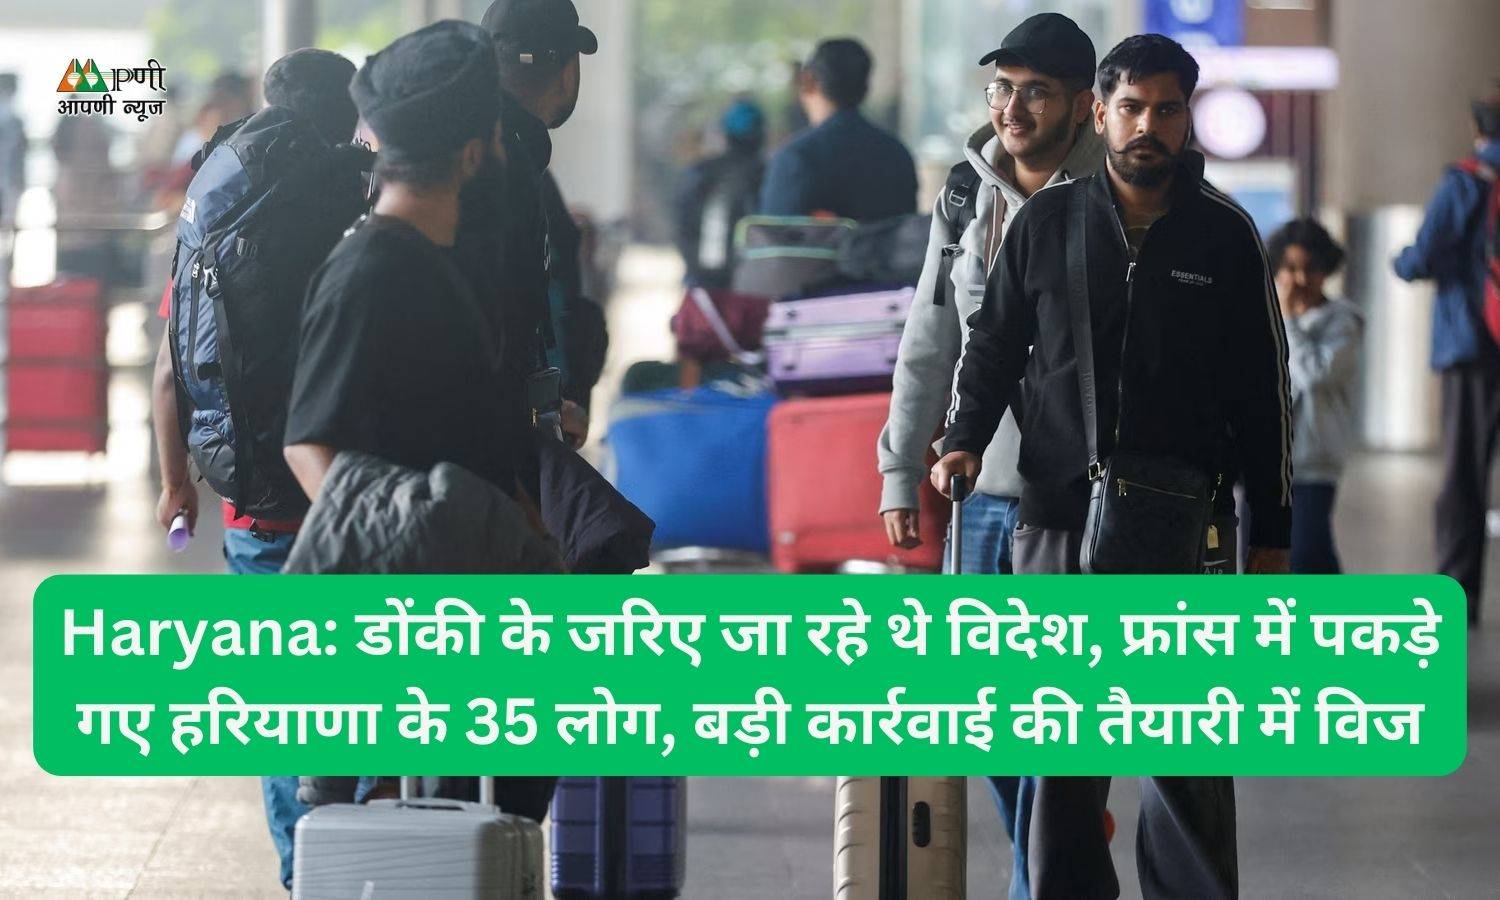 Haryana: डोंकी के जरिए जा रहे थे विदेश, फ्रांस में पकड़े गए हरियाणा के 35 लोग, बड़ी कार्रवाई की तैयारी में विज